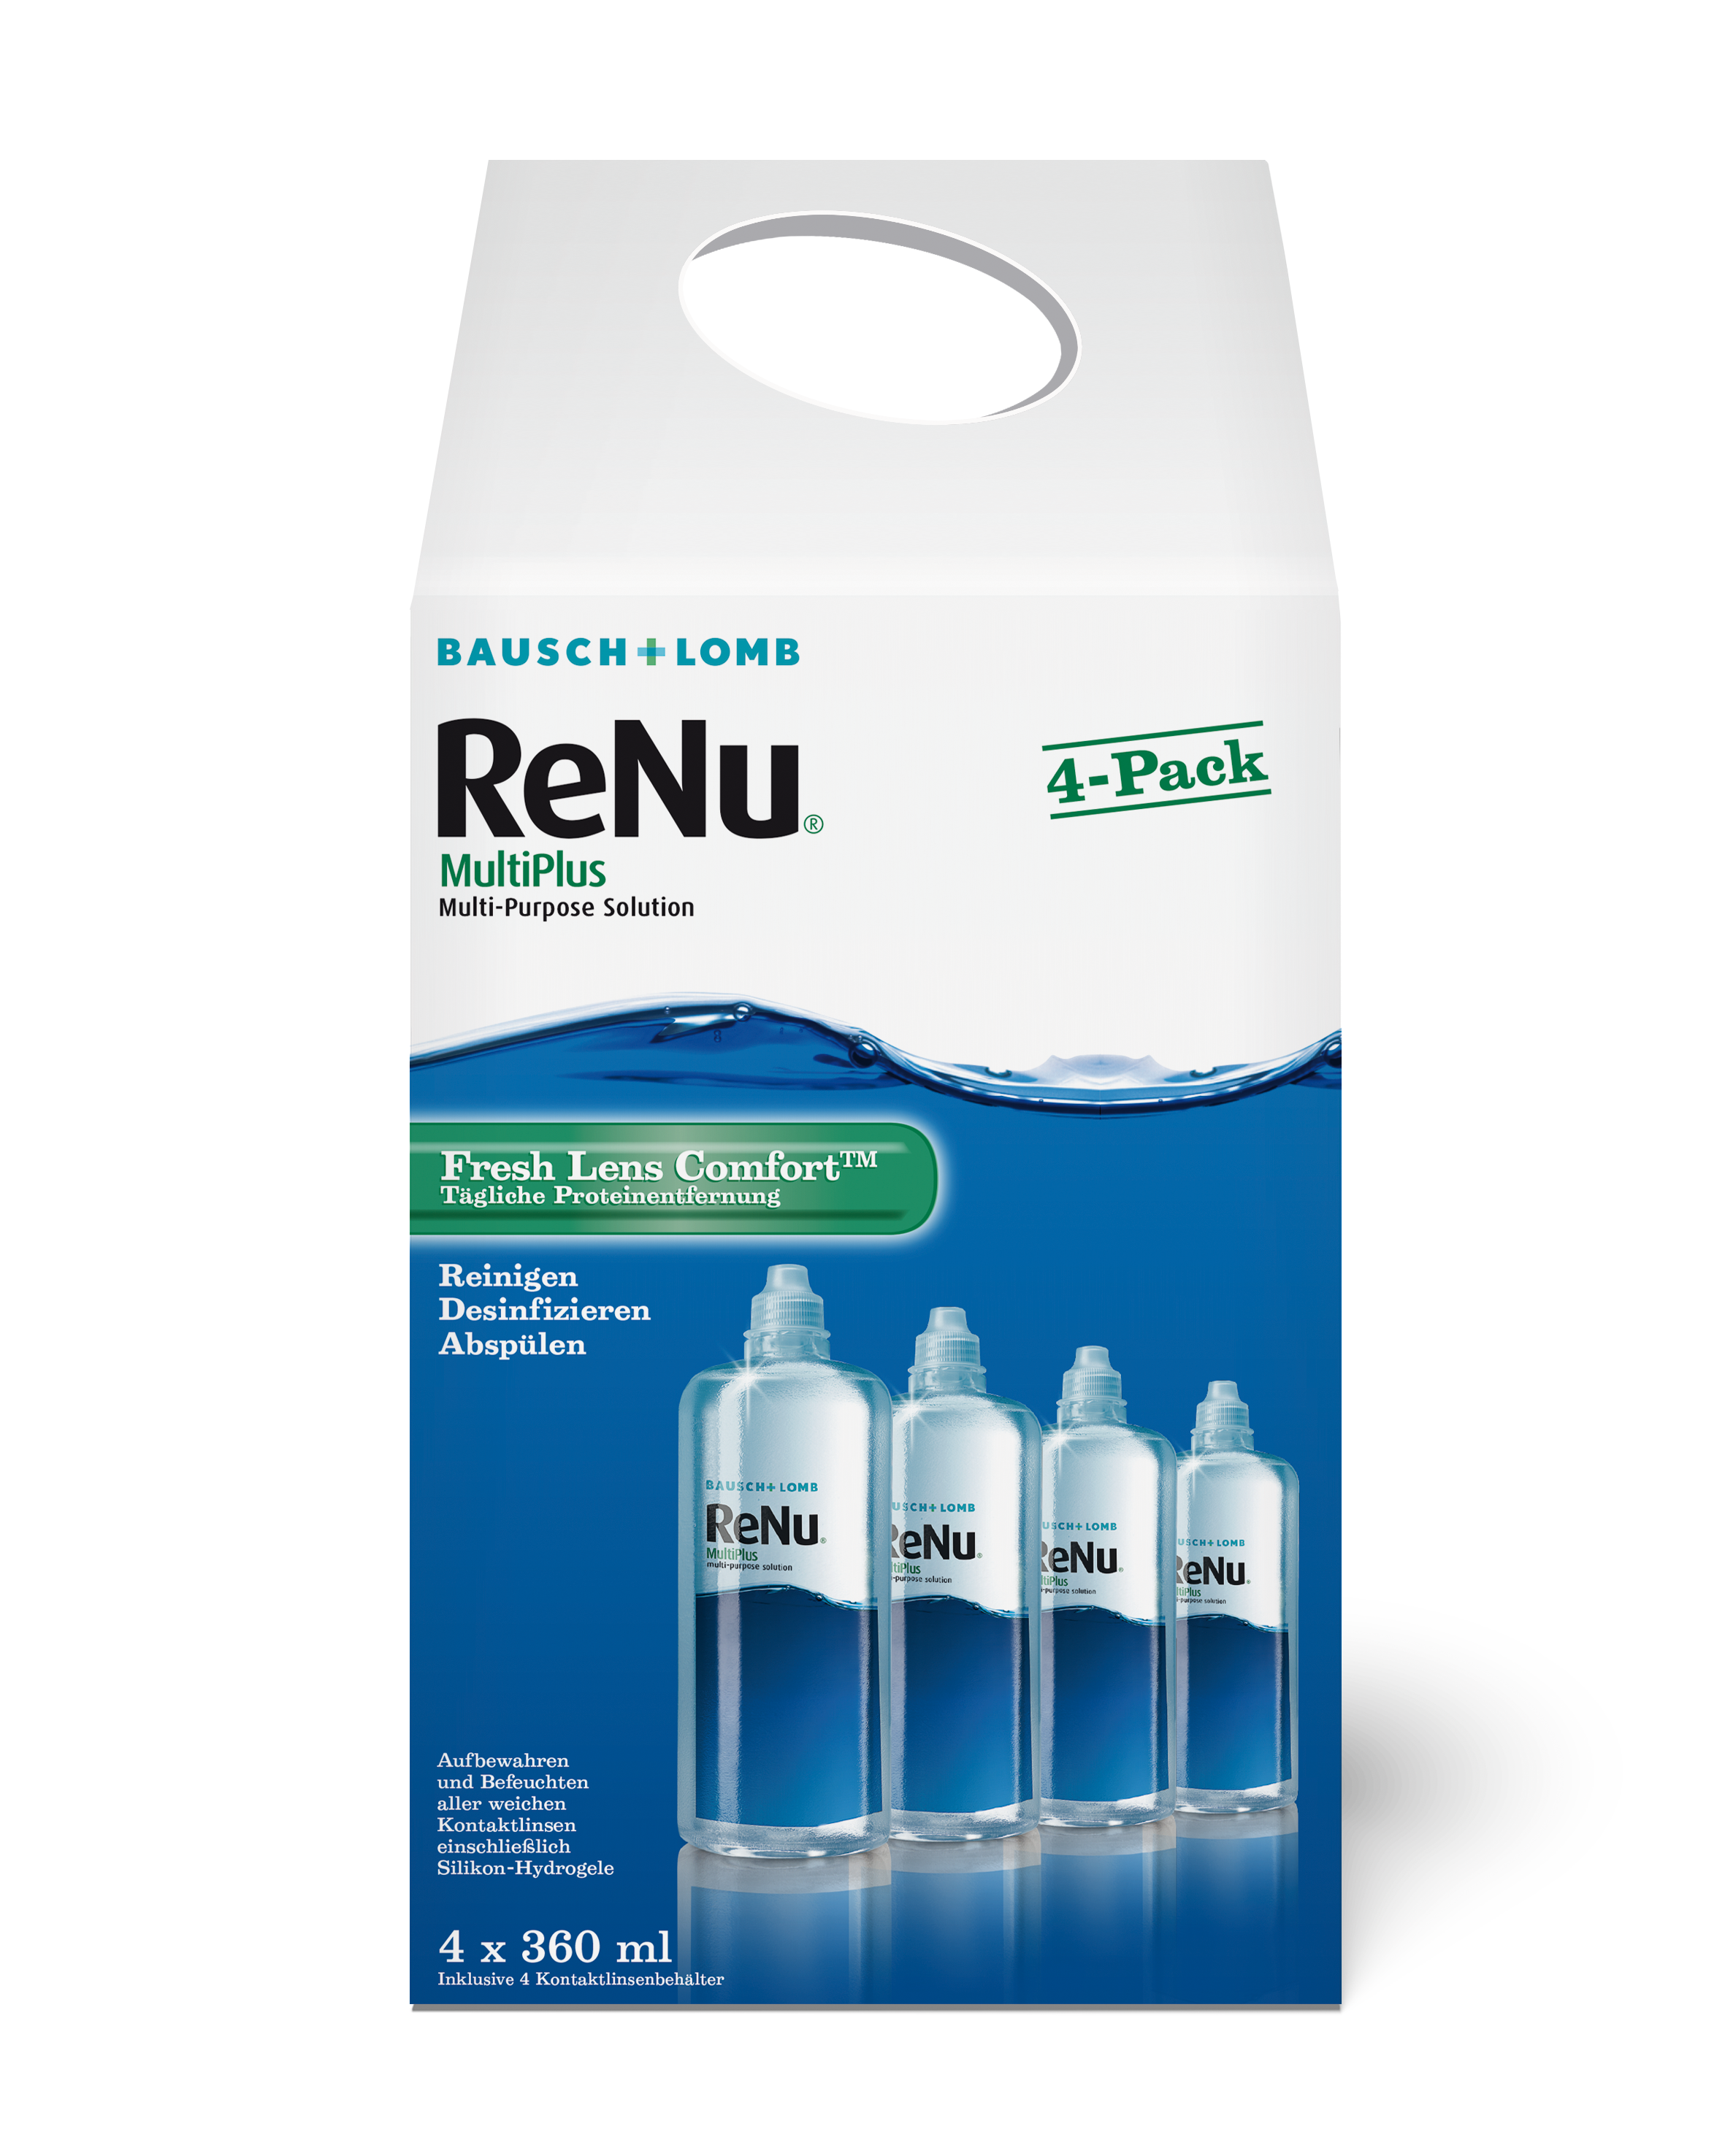 ReNu MultiPlus 4-Pack, Bausch & Lomb (4 x360 ml)